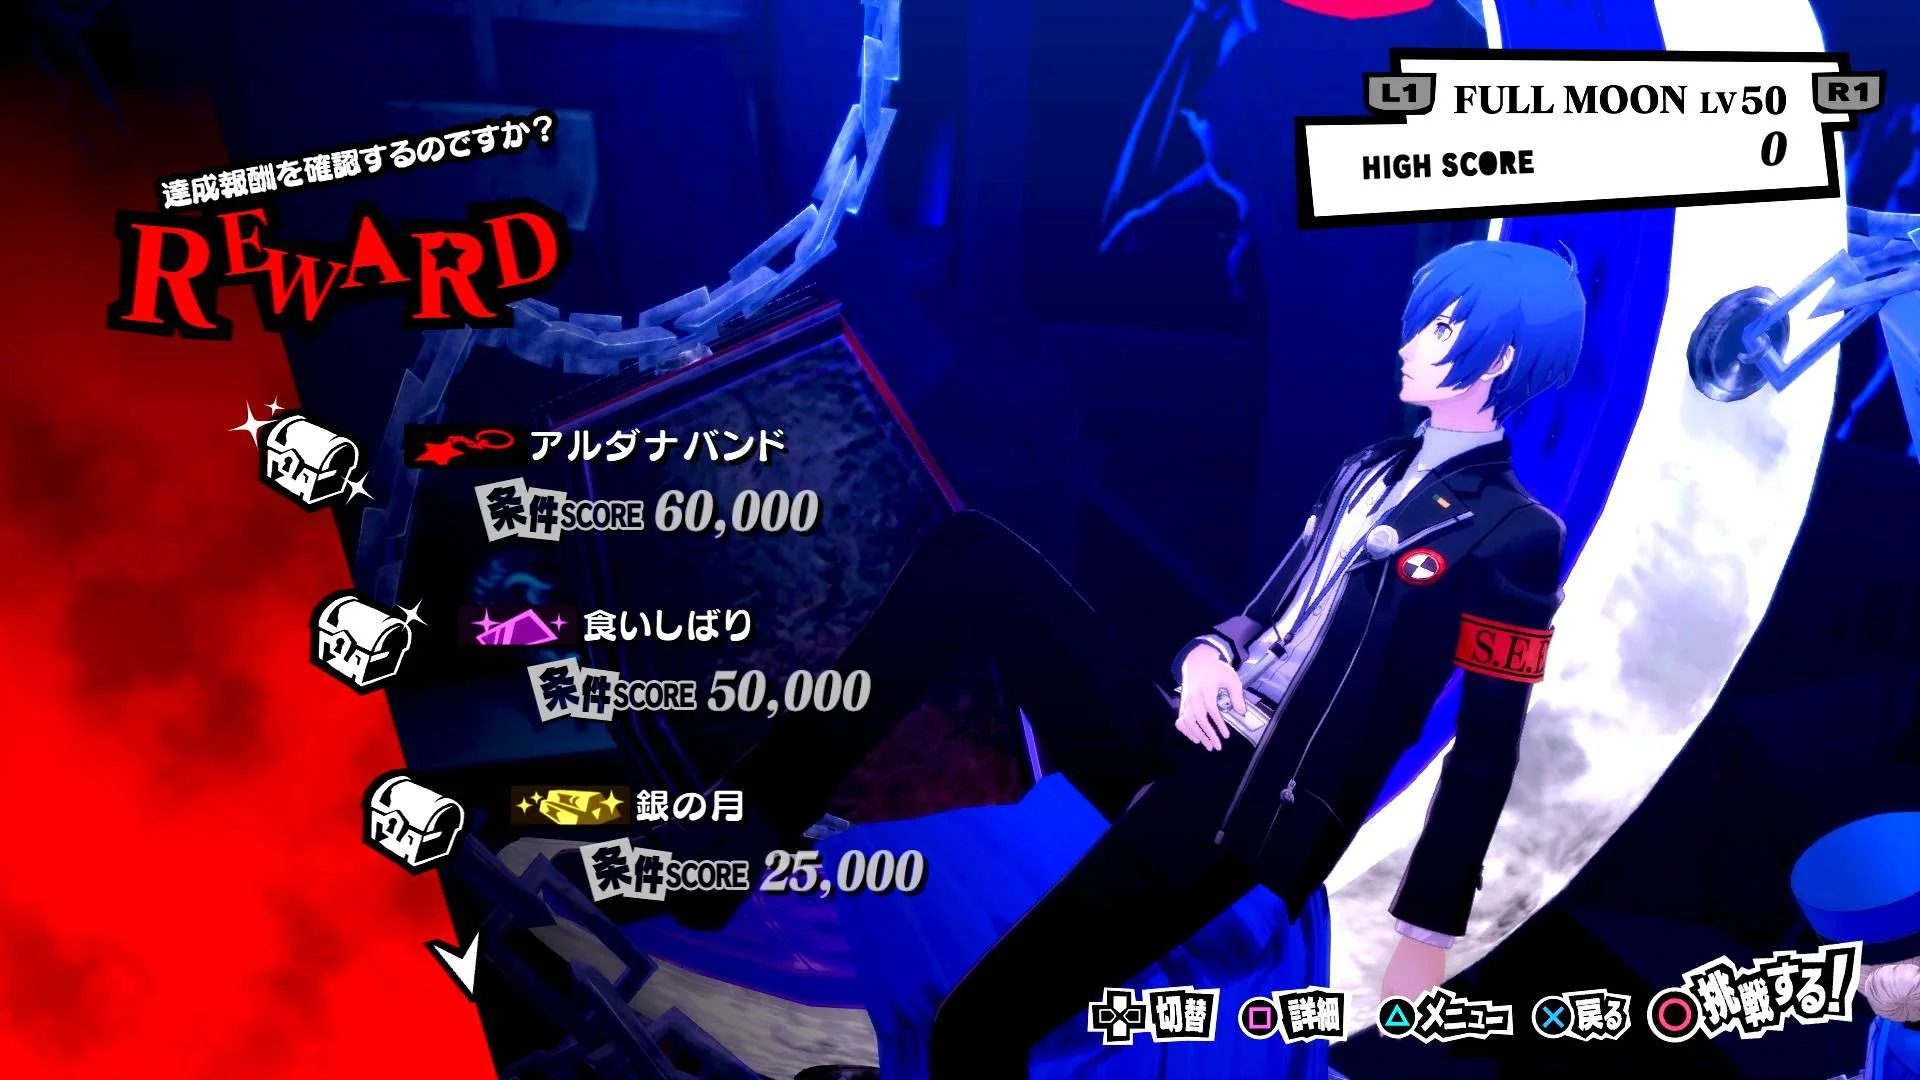 В Persona 5 Royal Джокер сможет сразиться с героями Persona 3 и Persona 4 - фото 4